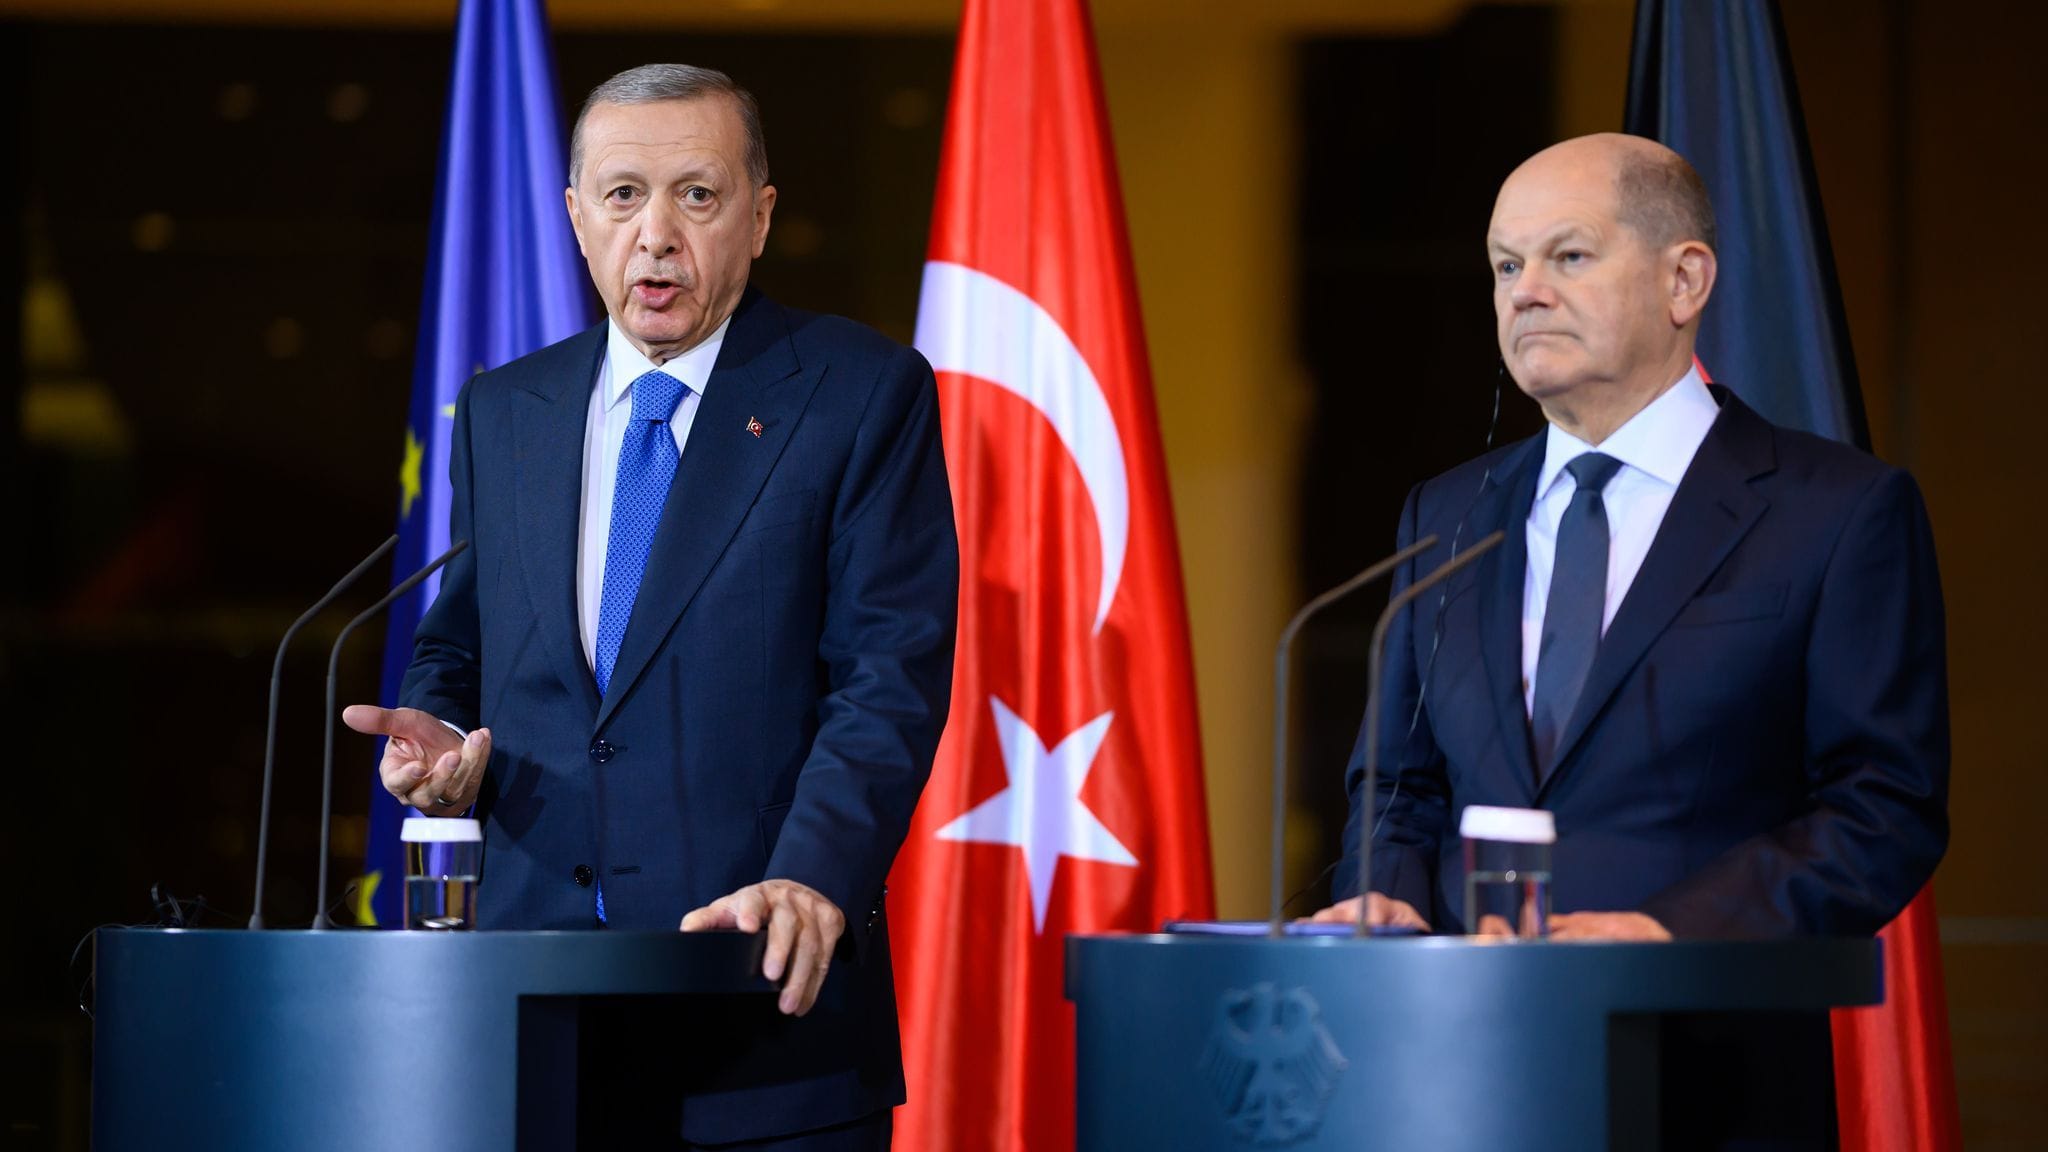 Türkischer Präsident | Erdogan bei Scholz: Differenzen, aber kein Eklat